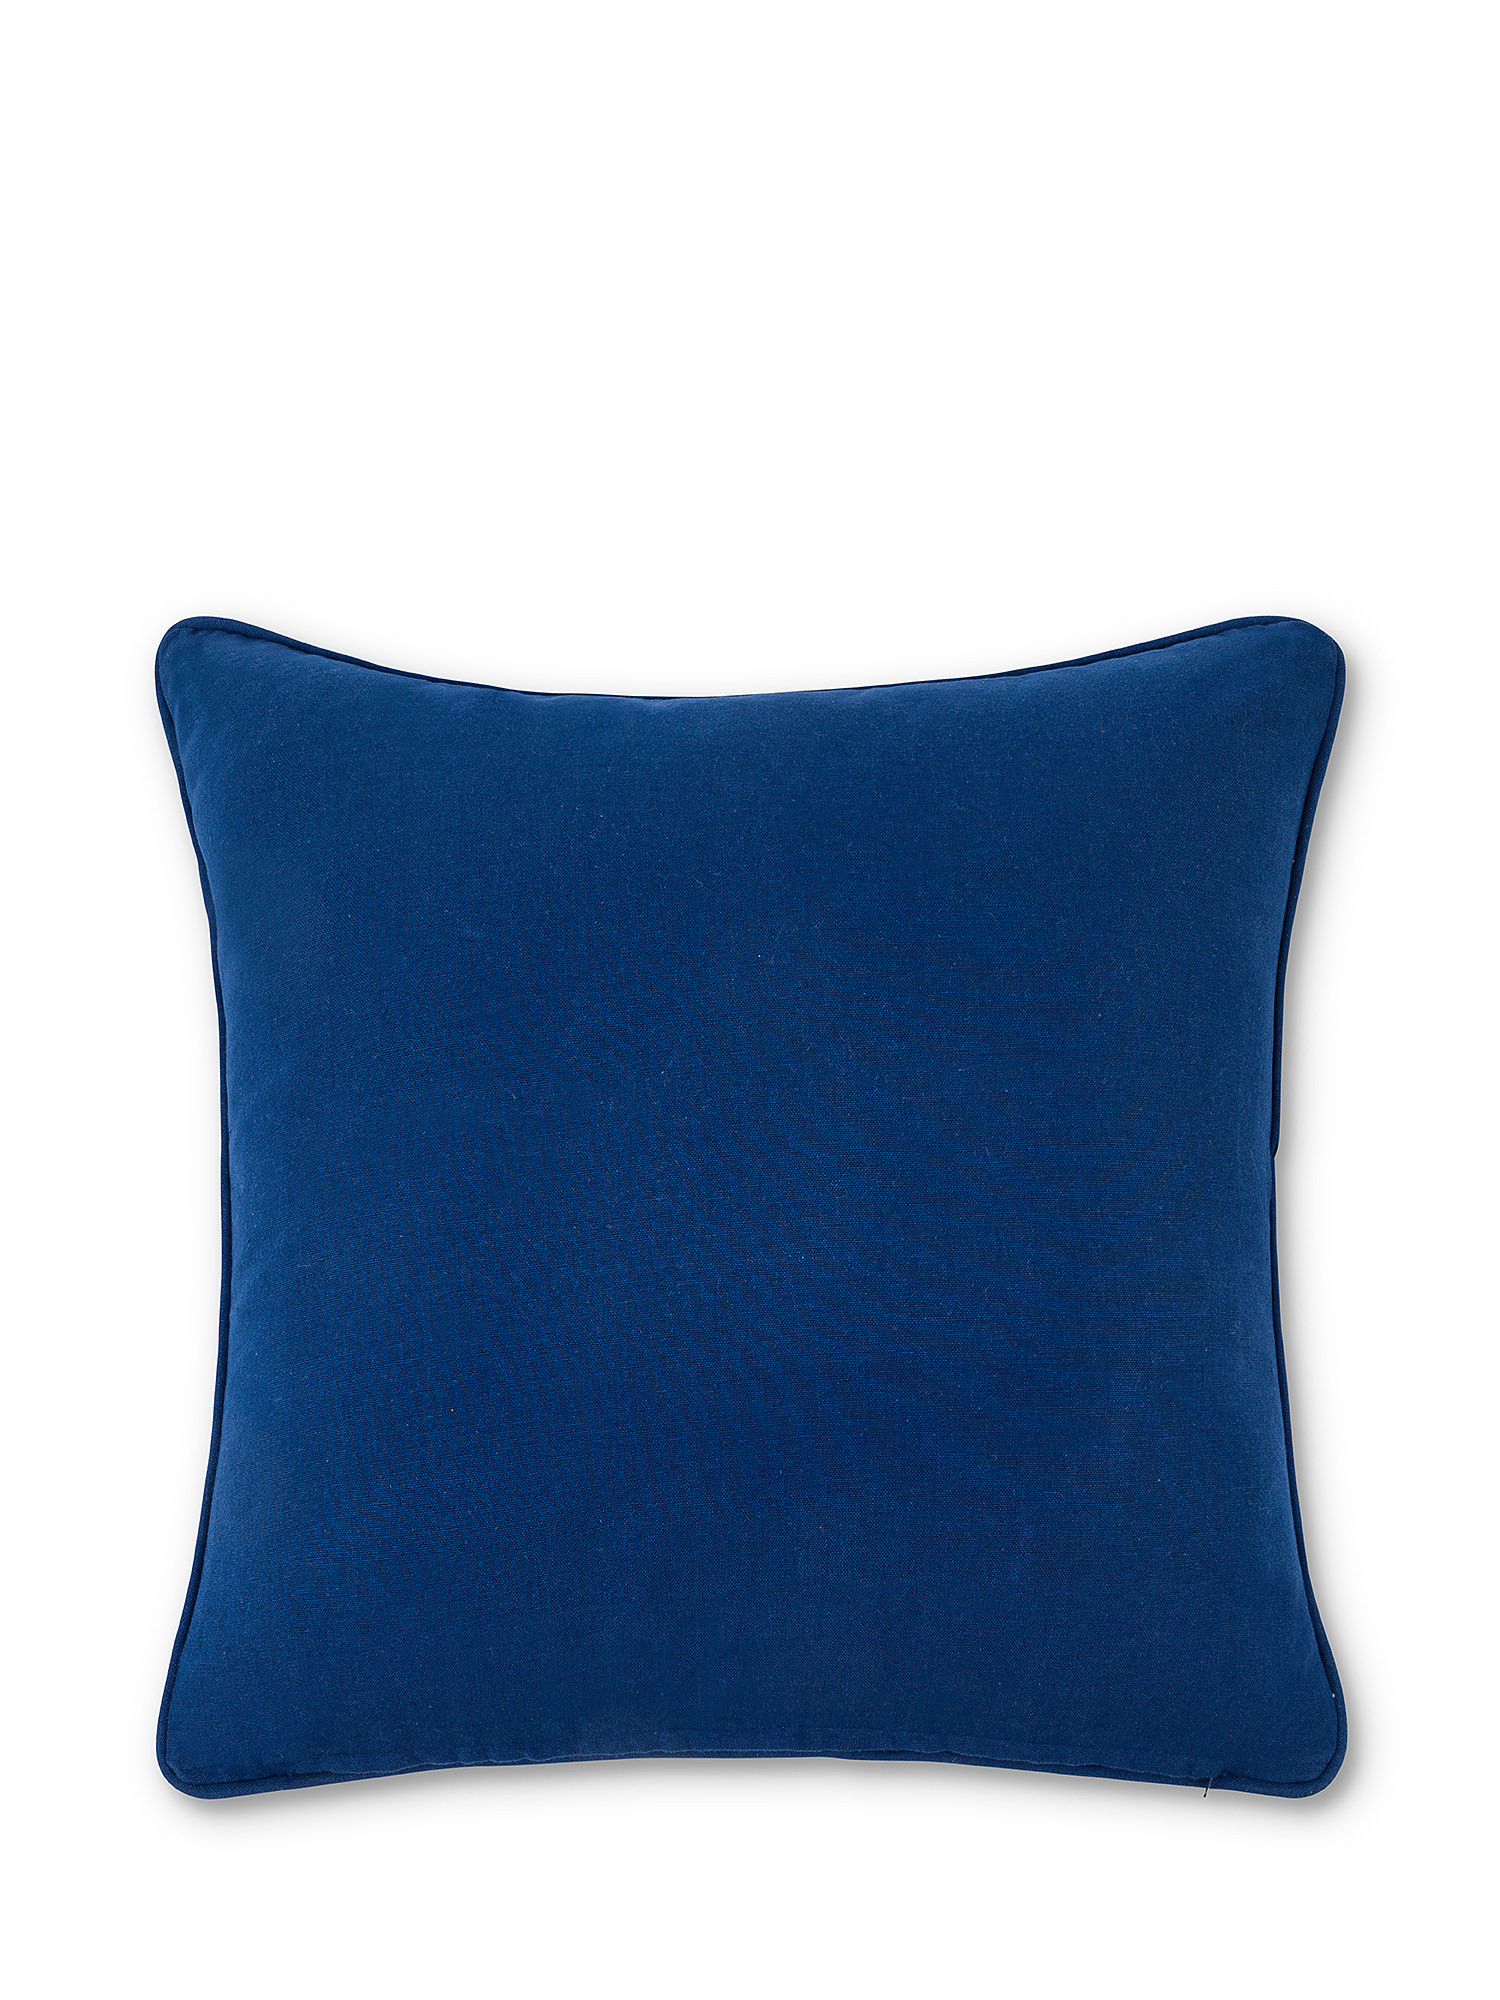 Dobby fabric cotton cushion 45x45cm, Light Blue, large image number 1